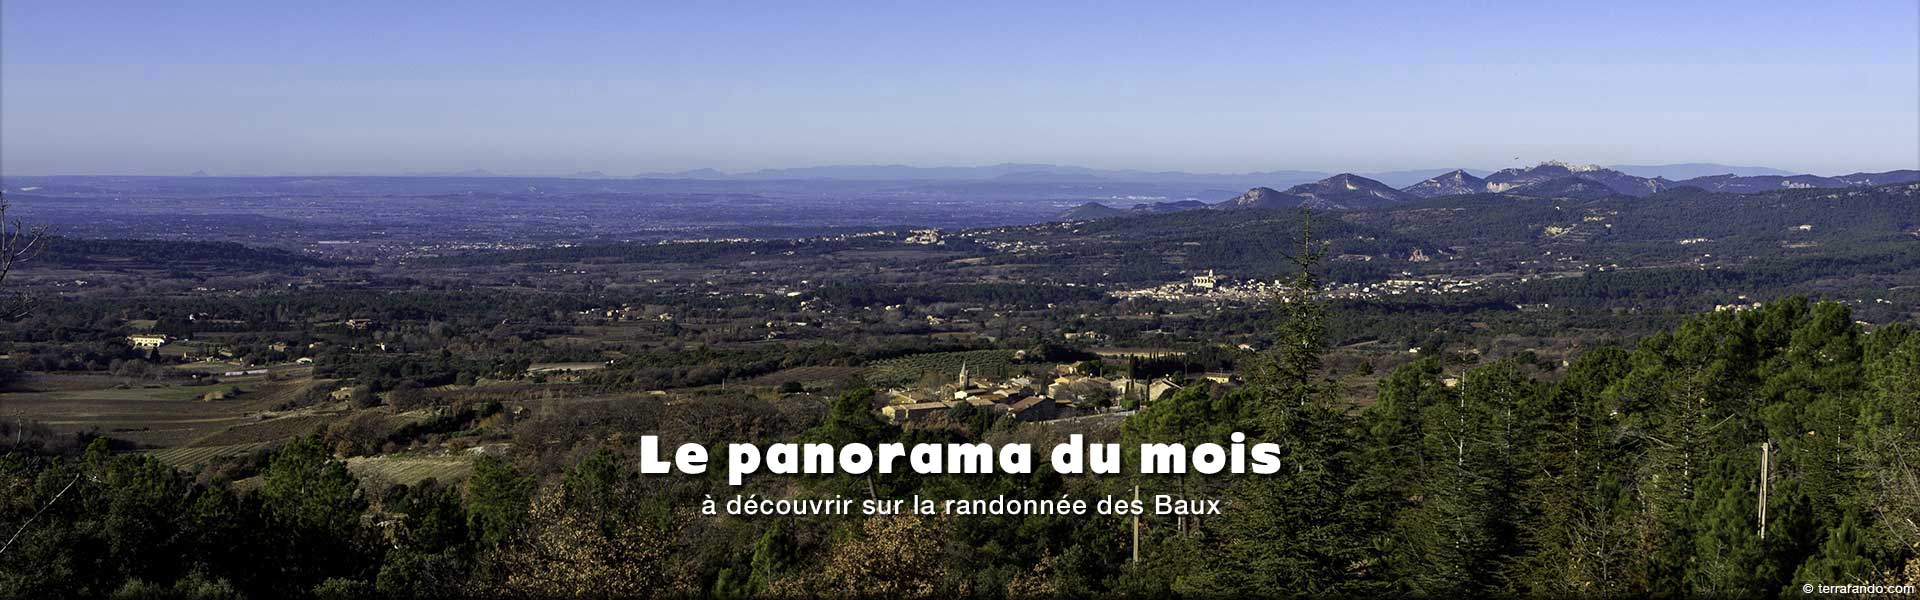 Panorama à découvrir sur la randonnée des Baux sur le versant Sud du mont ventoux à côté de Bédoin